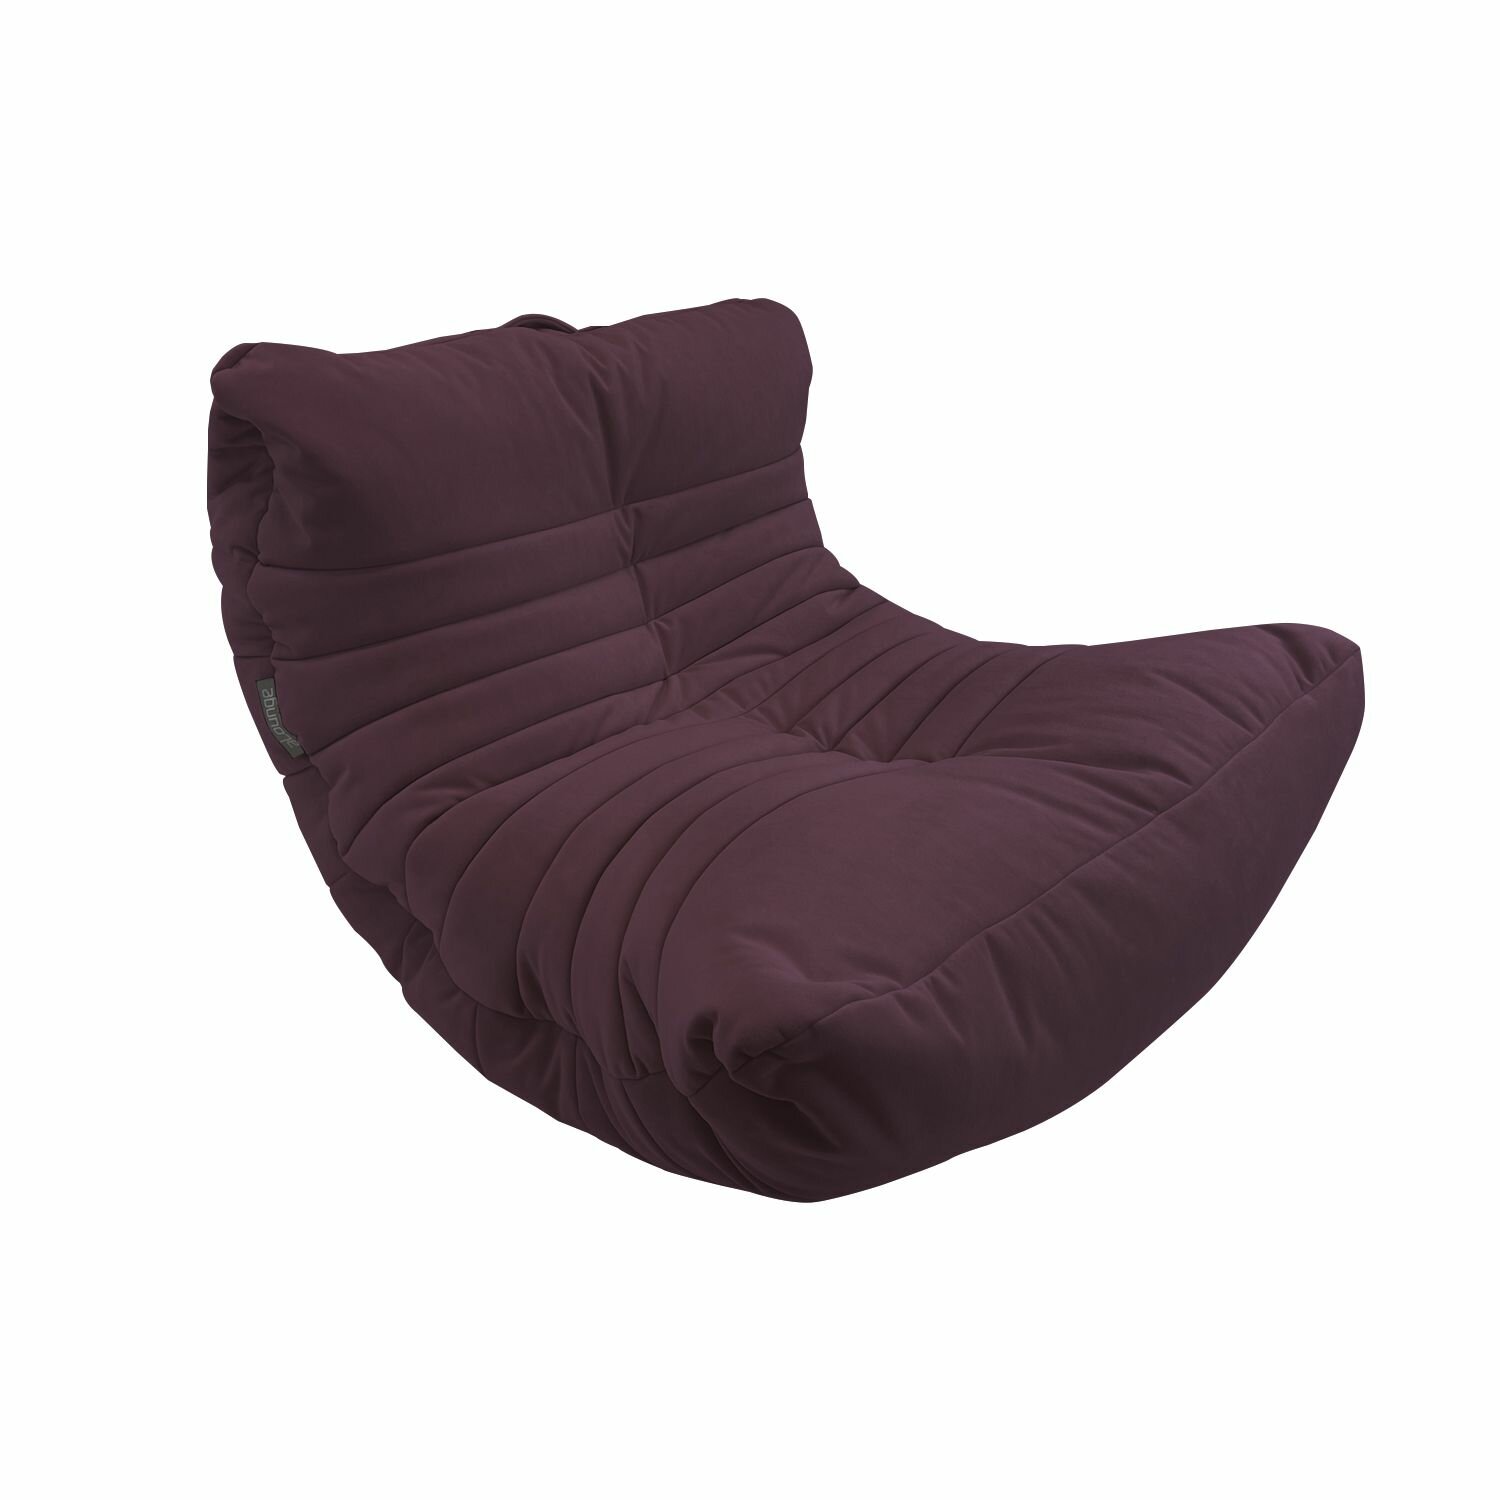 Бескаркасное дизайнерское кресло для отдыха aLounge - Acoustic Sofa - Aubergine Dream (велюр, фиолетовый) - лаунж мебель в гостиную, спальню, детскую, офис, на балкон